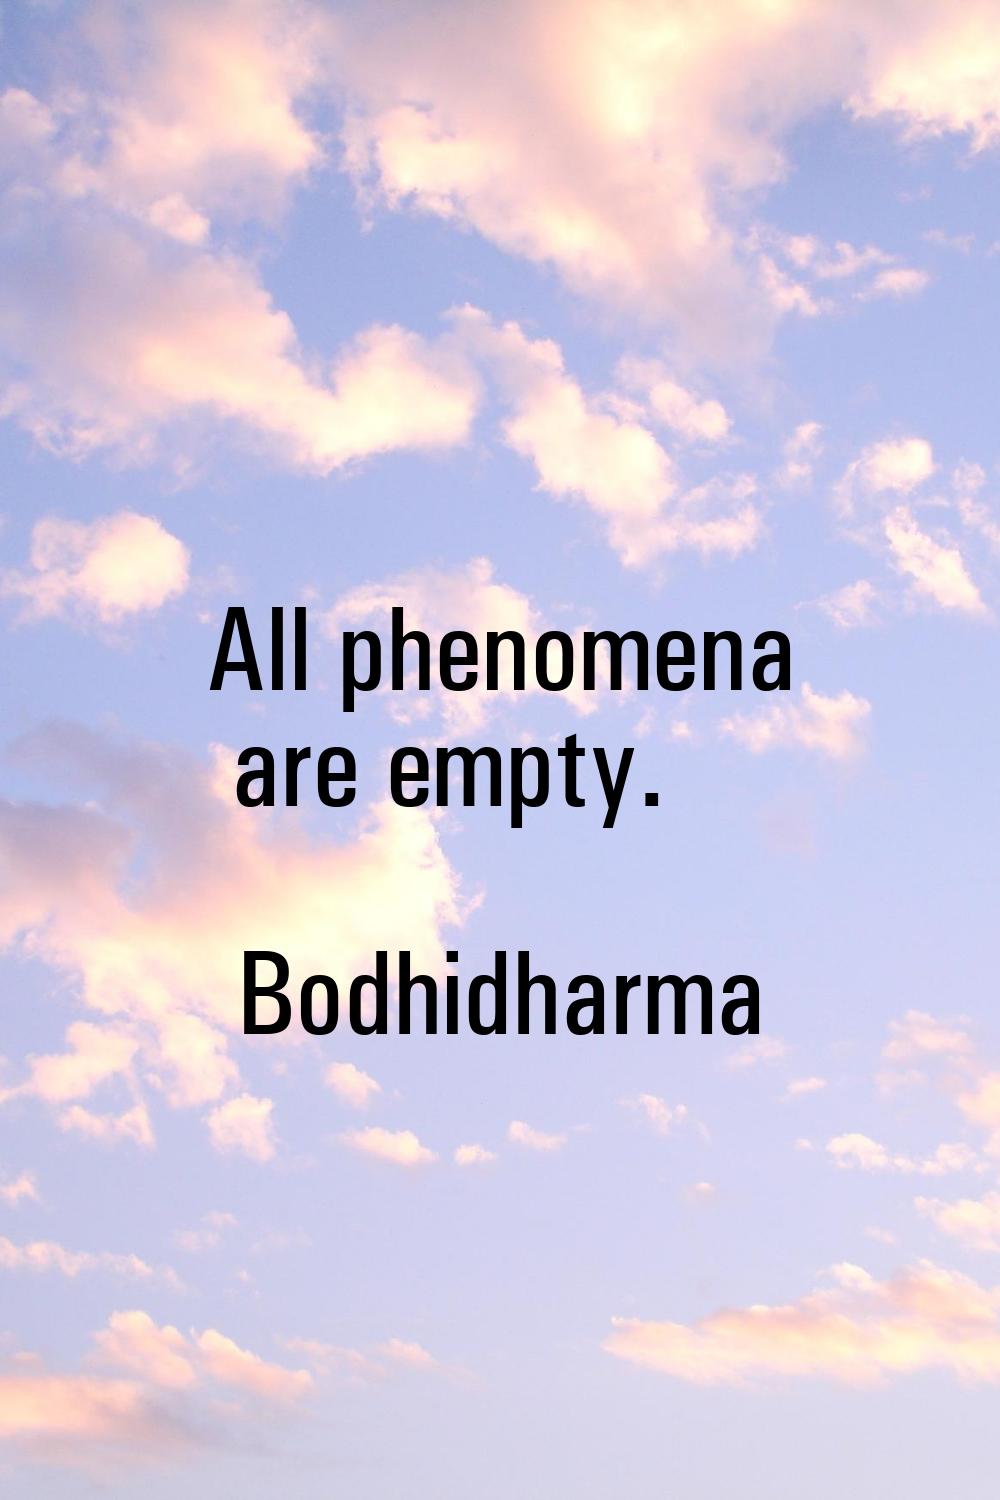 All phenomena are empty.